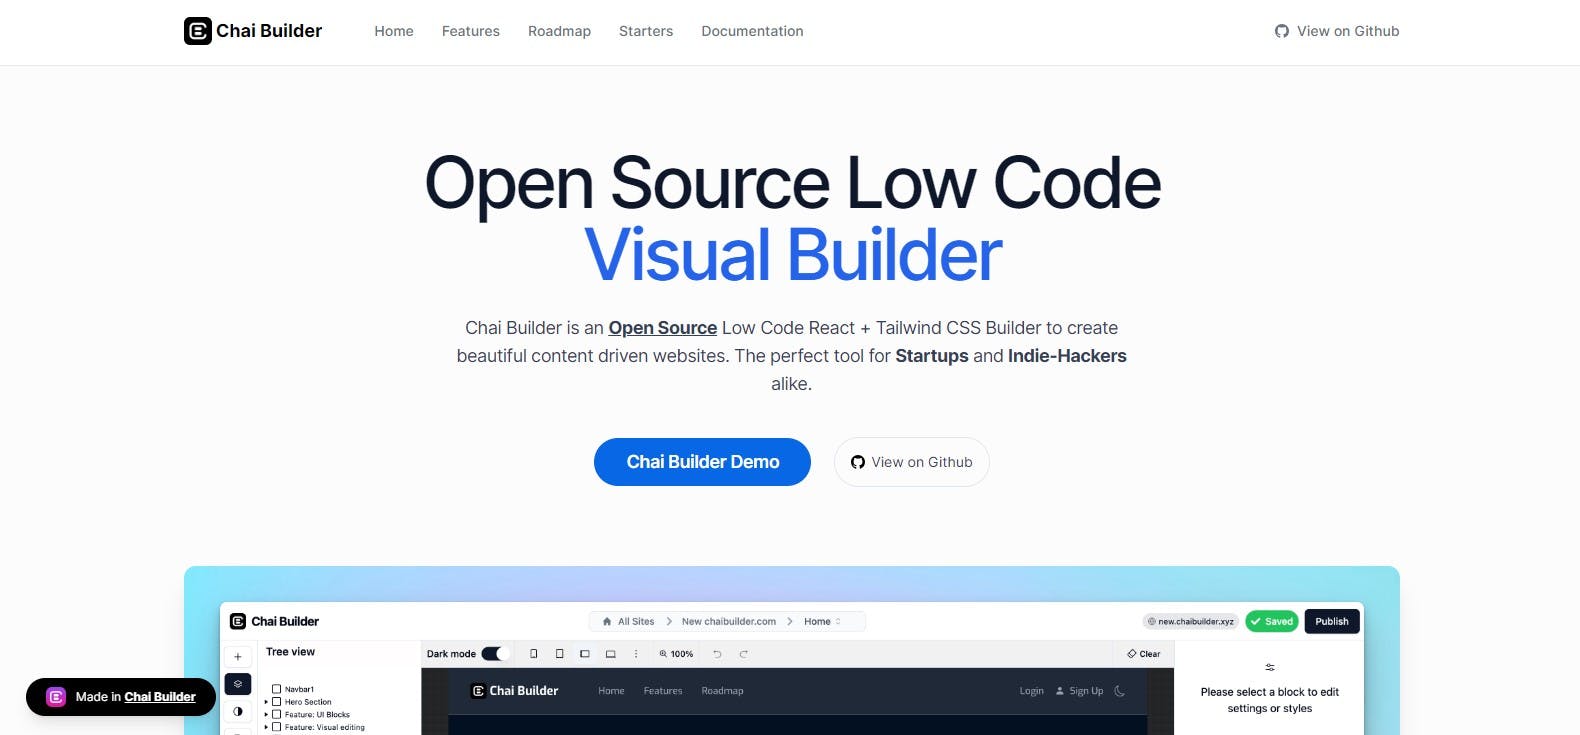 Open Source Low Code Visual Builder